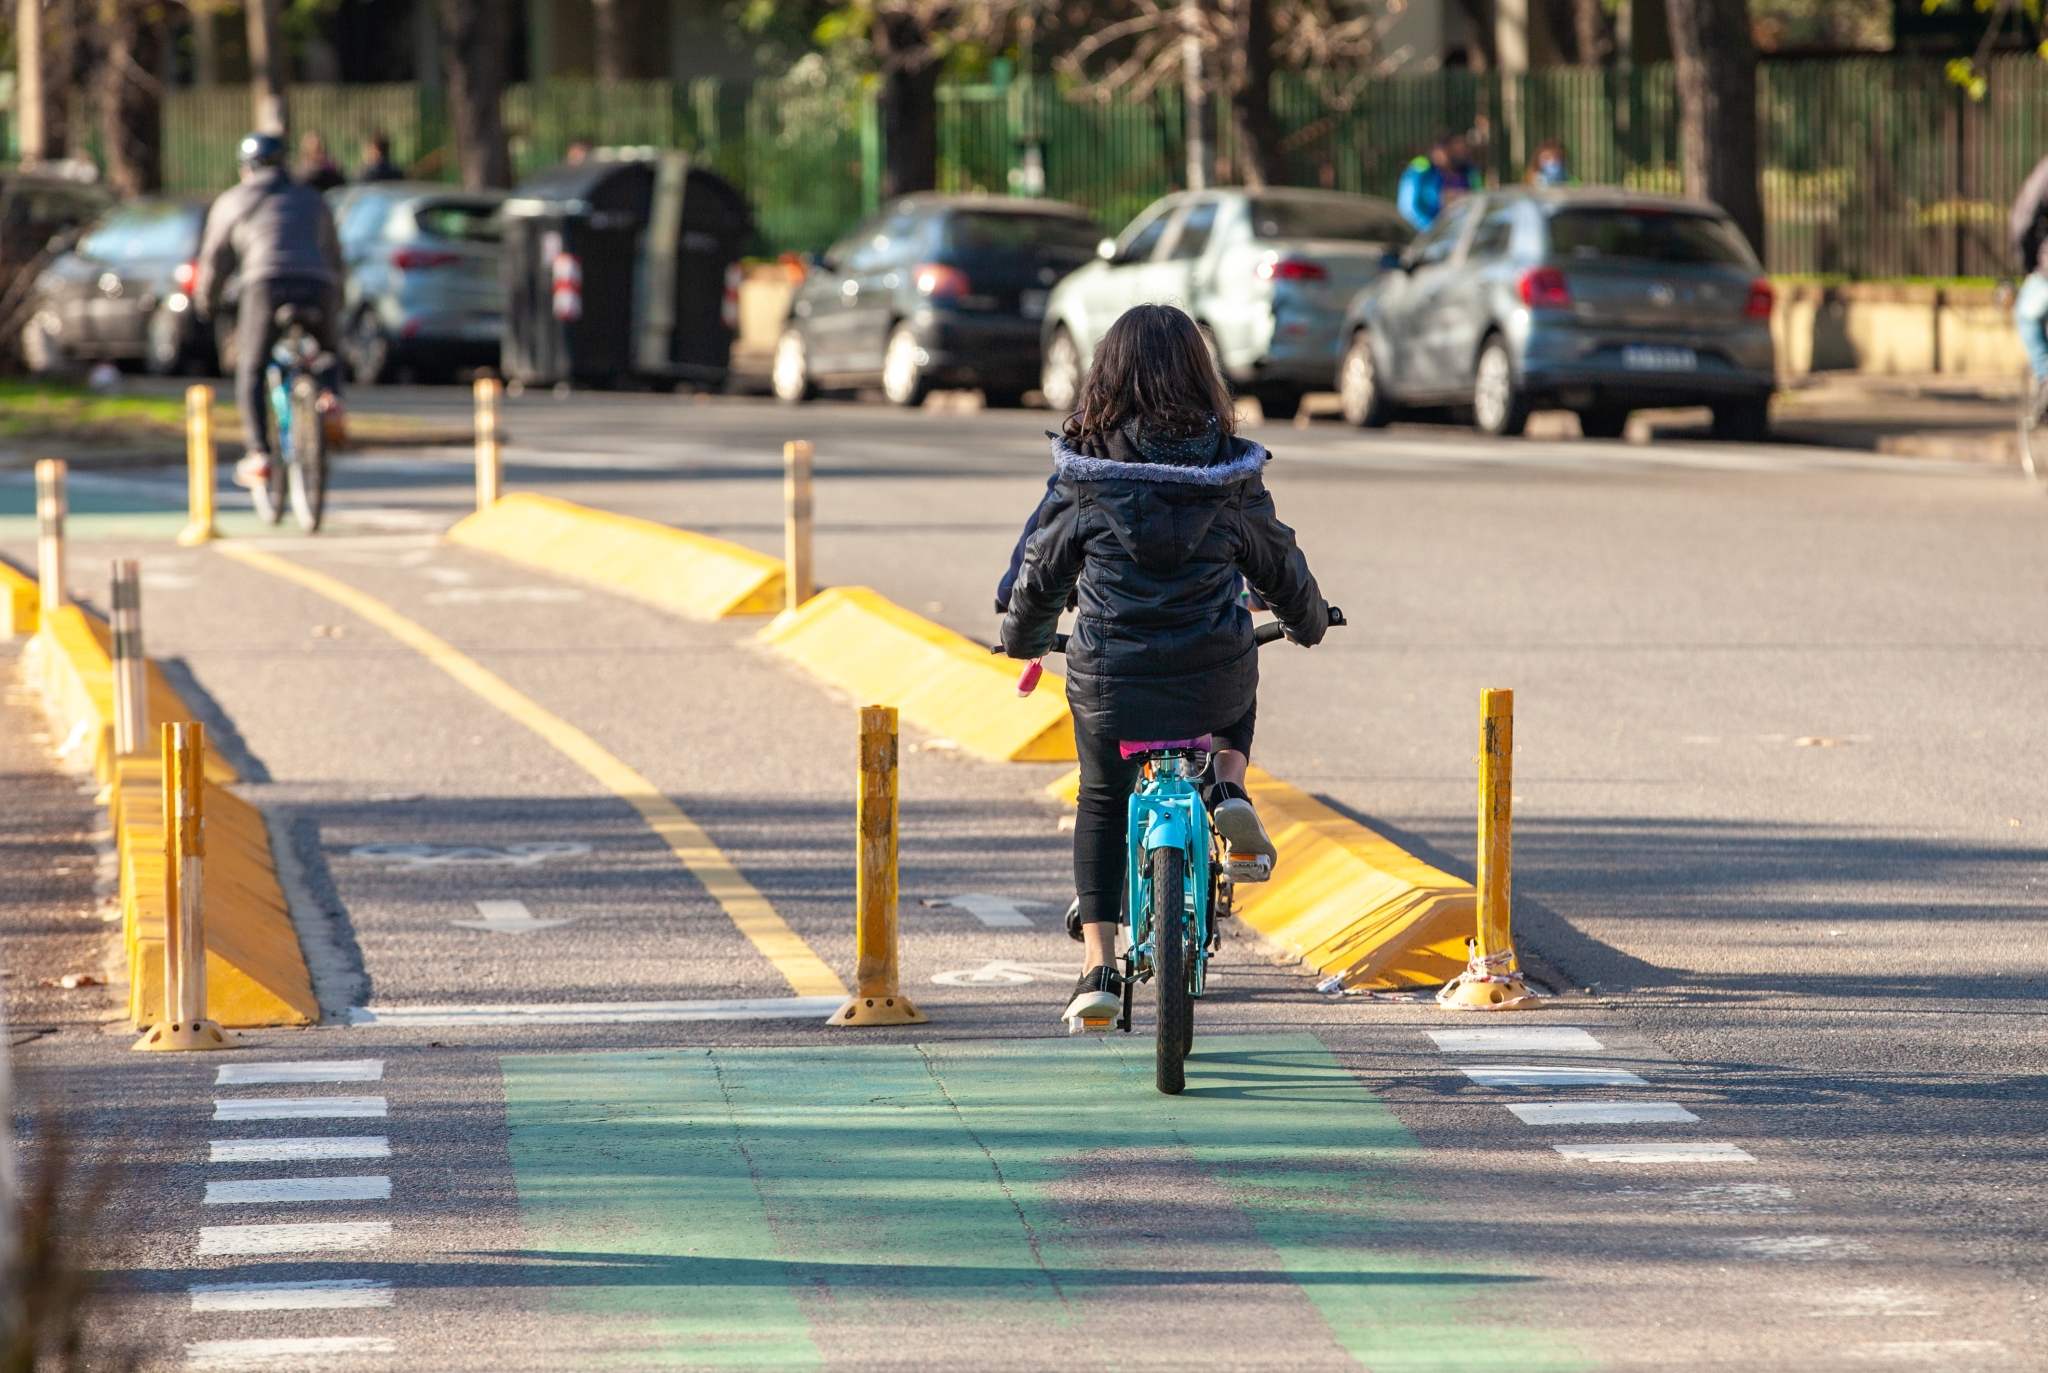 Cycle vision: Buenos Aires plots a bigger bicycle future